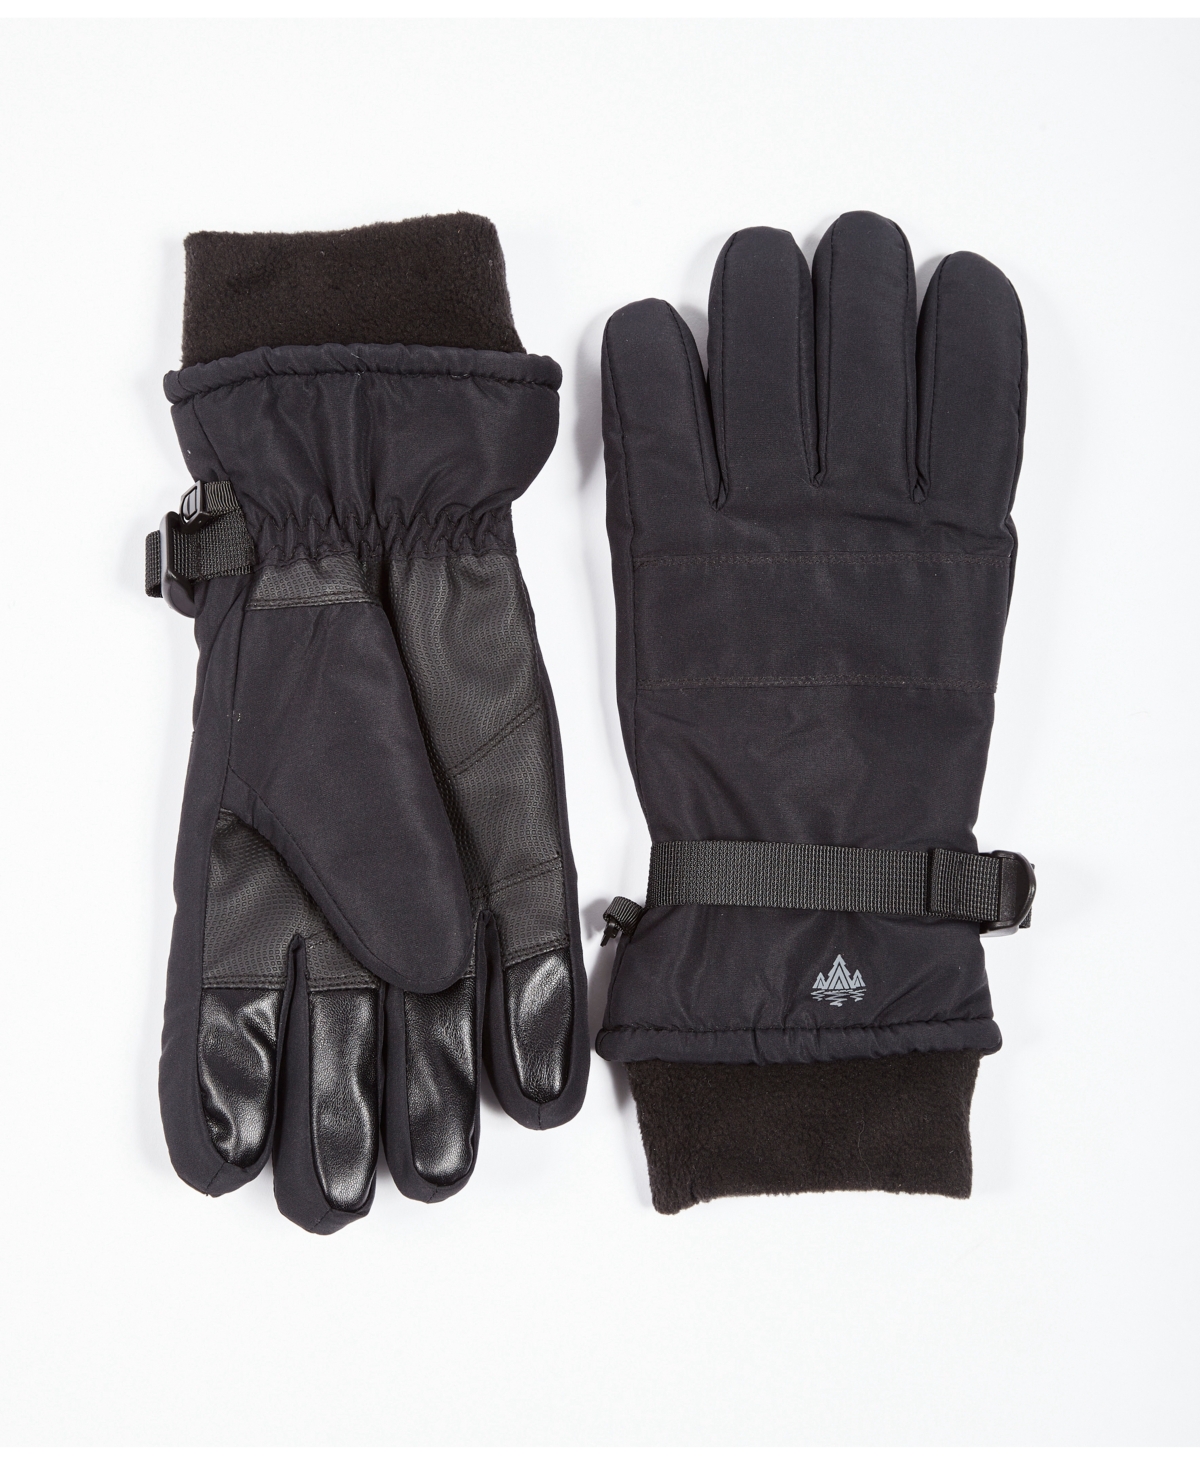 Men's Ski Gloves with Cuff - Black